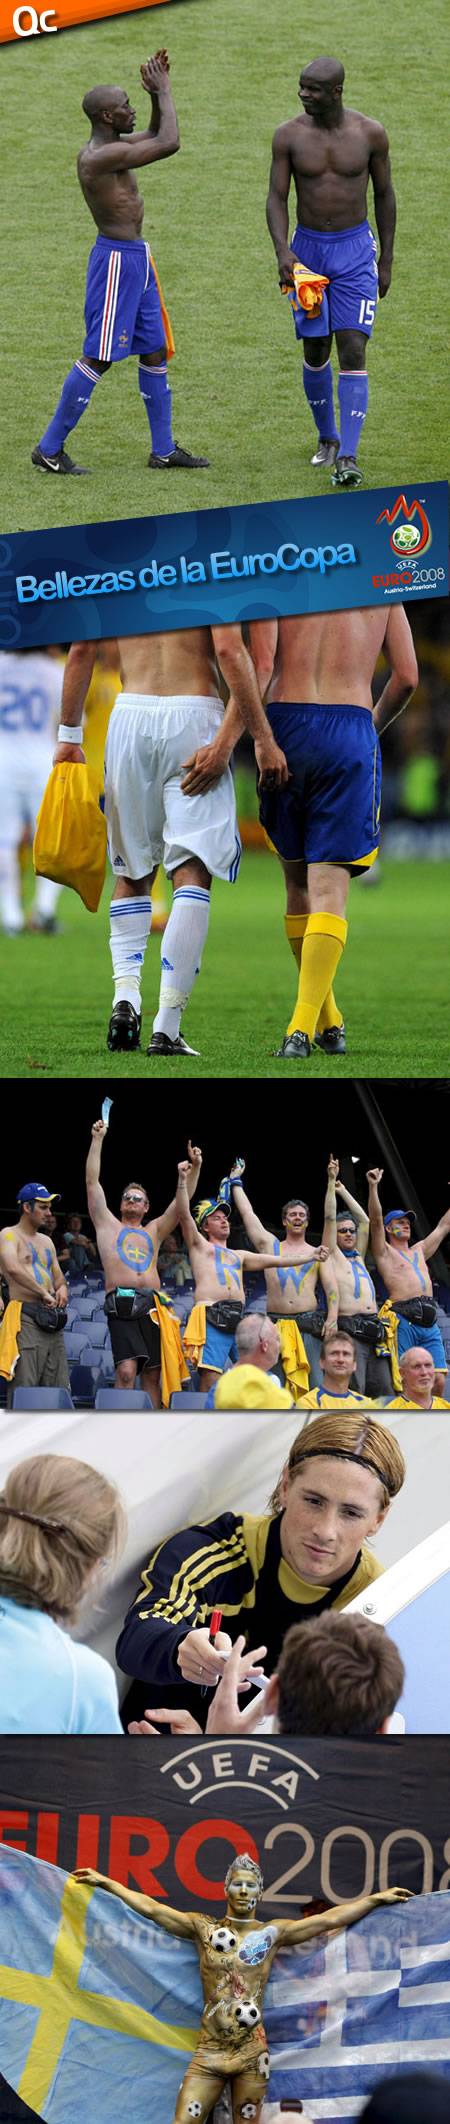 EuroCopa 2008